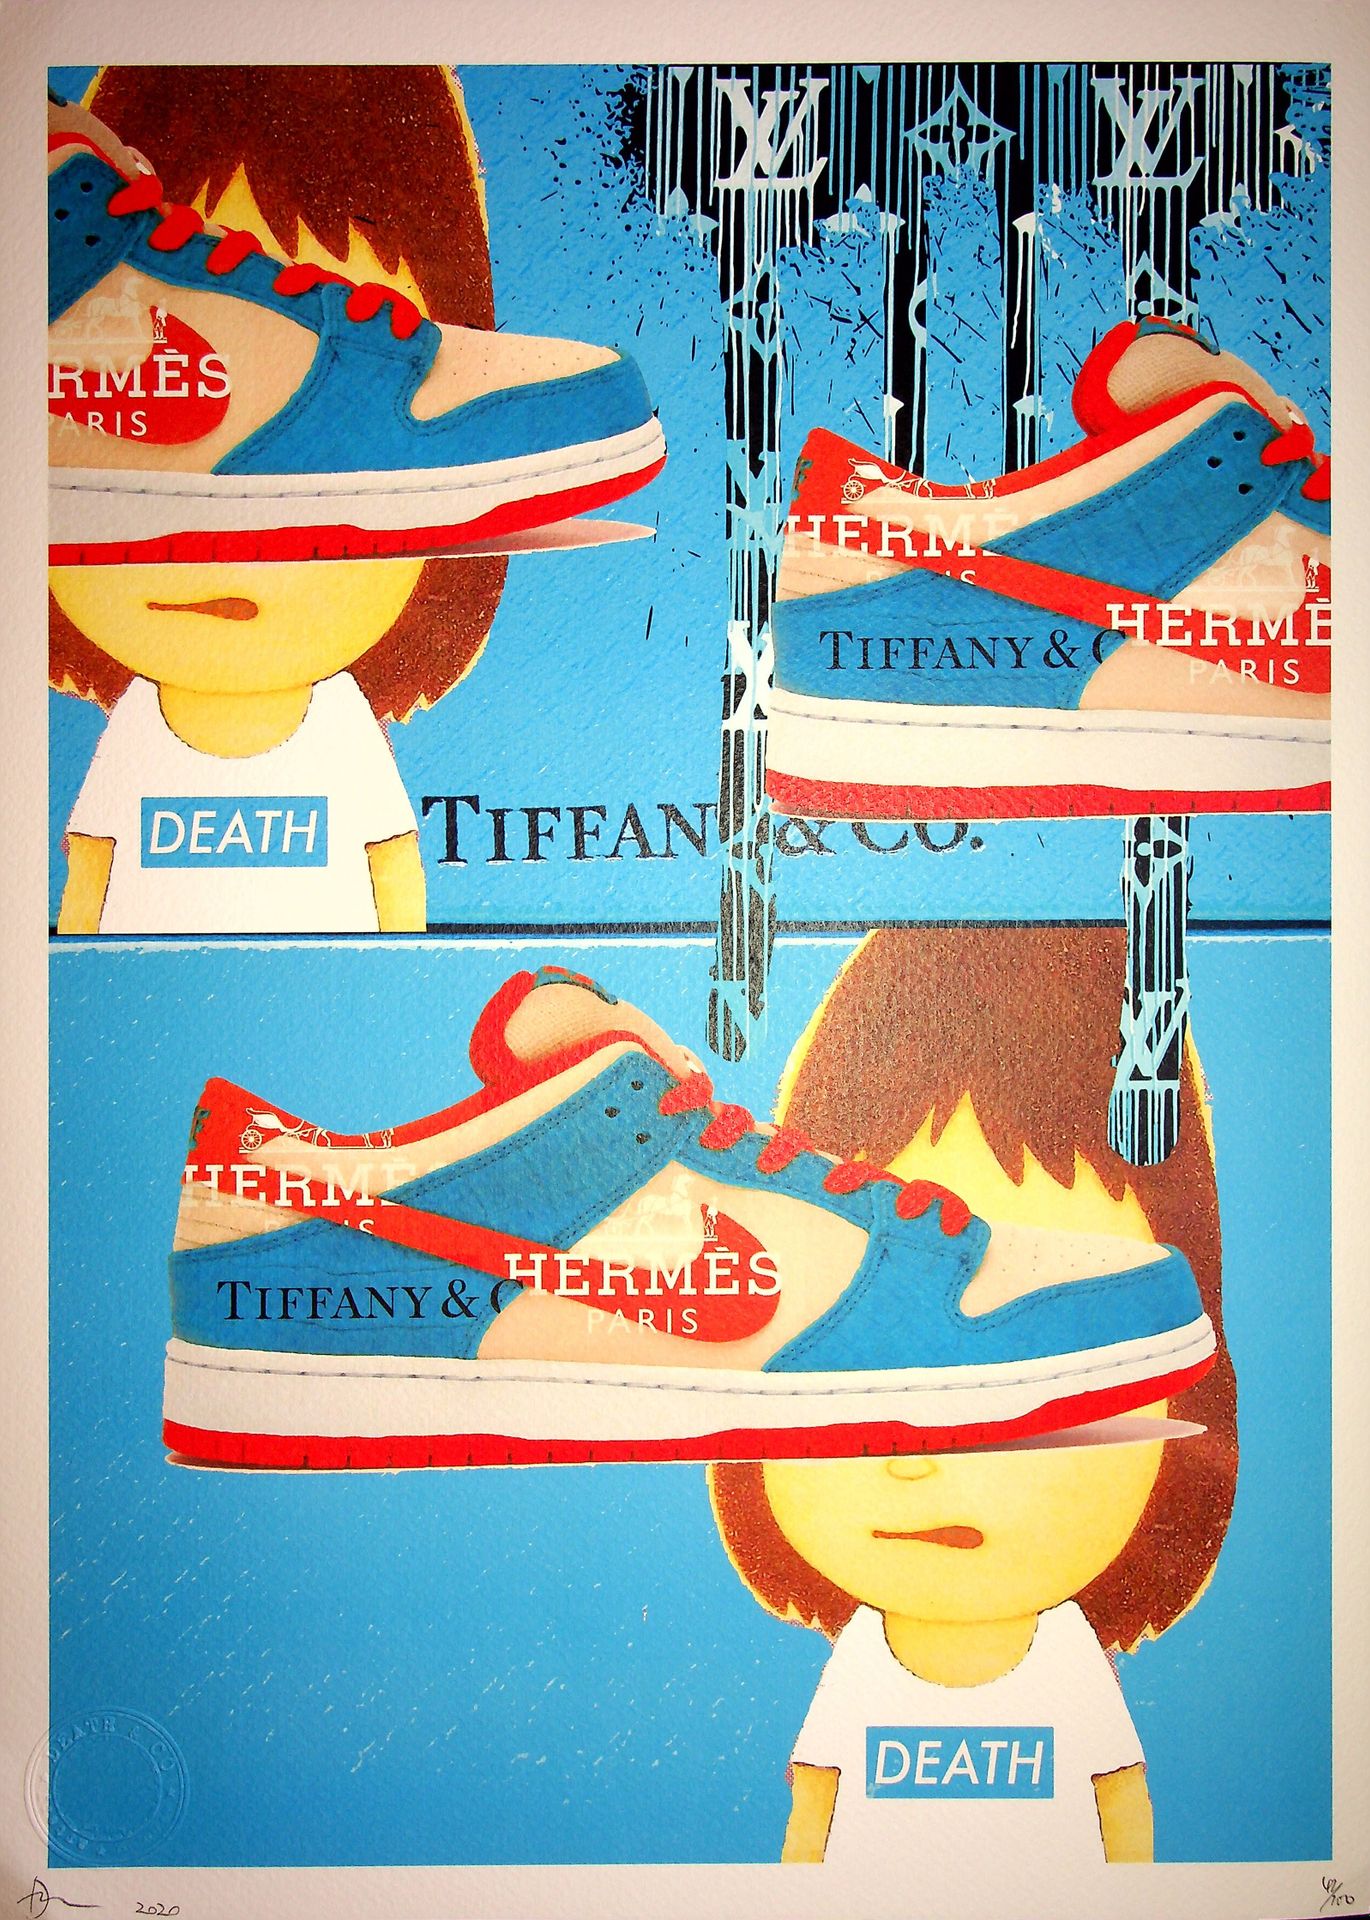 Death NYC Muerte NYC

Zapatillas Hermes Tiffany Nike azules, 2020

Serigrafía or&hellip;